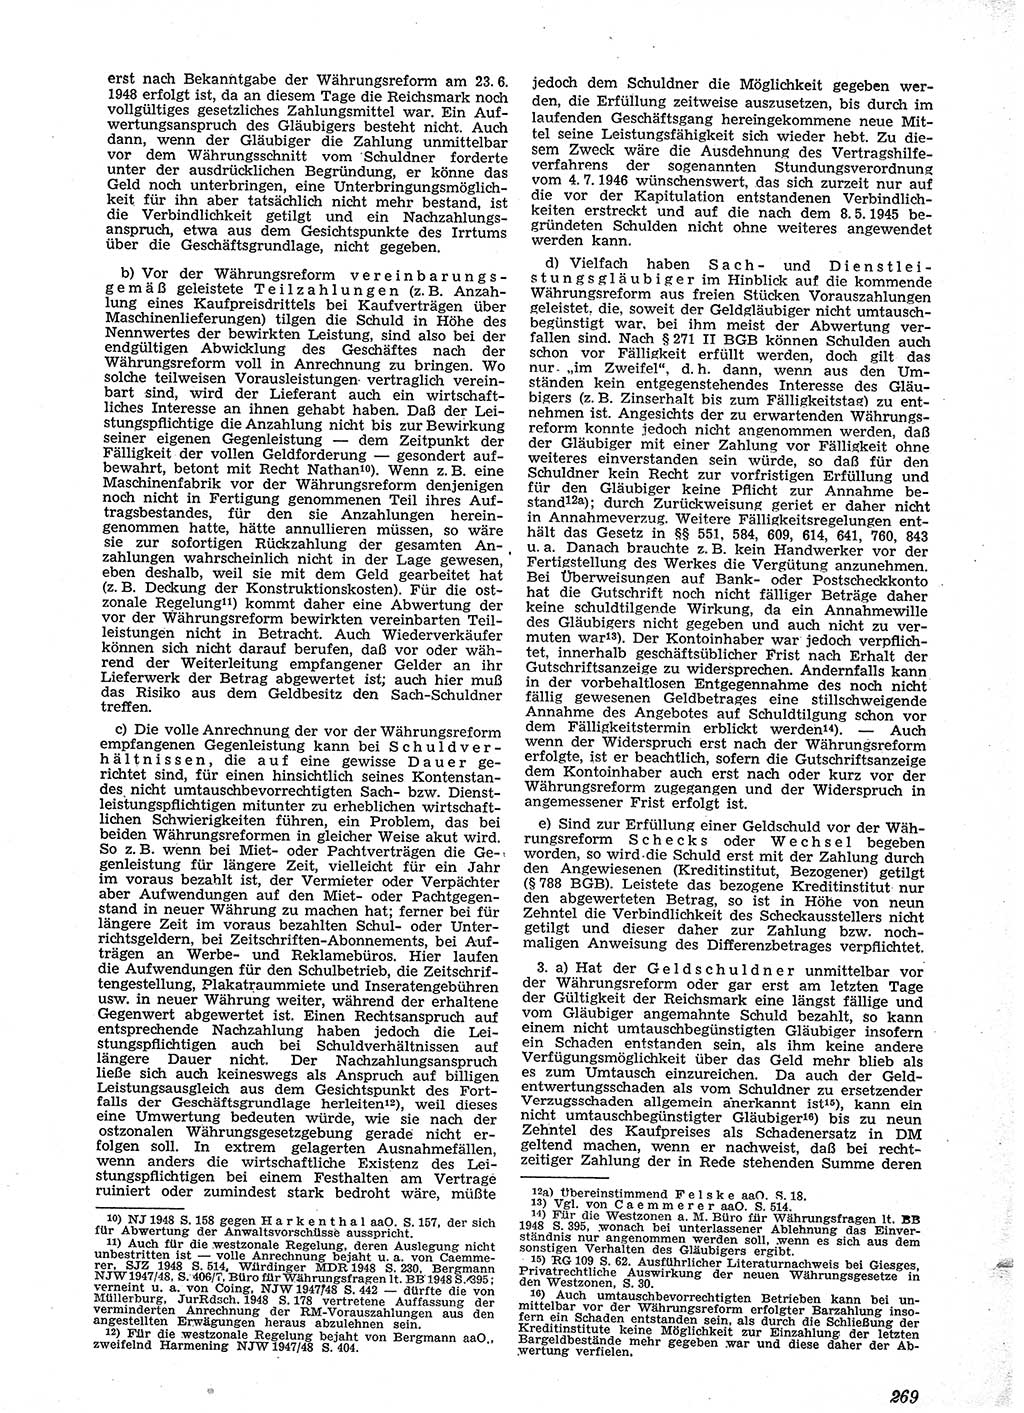 Neue Justiz (NJ), Zeitschrift für Recht und Rechtswissenschaft [Sowjetische Besatzungszone (SBZ) Deutschland], 2. Jahrgang 1948, Seite 269 (NJ SBZ Dtl. 1948, S. 269)